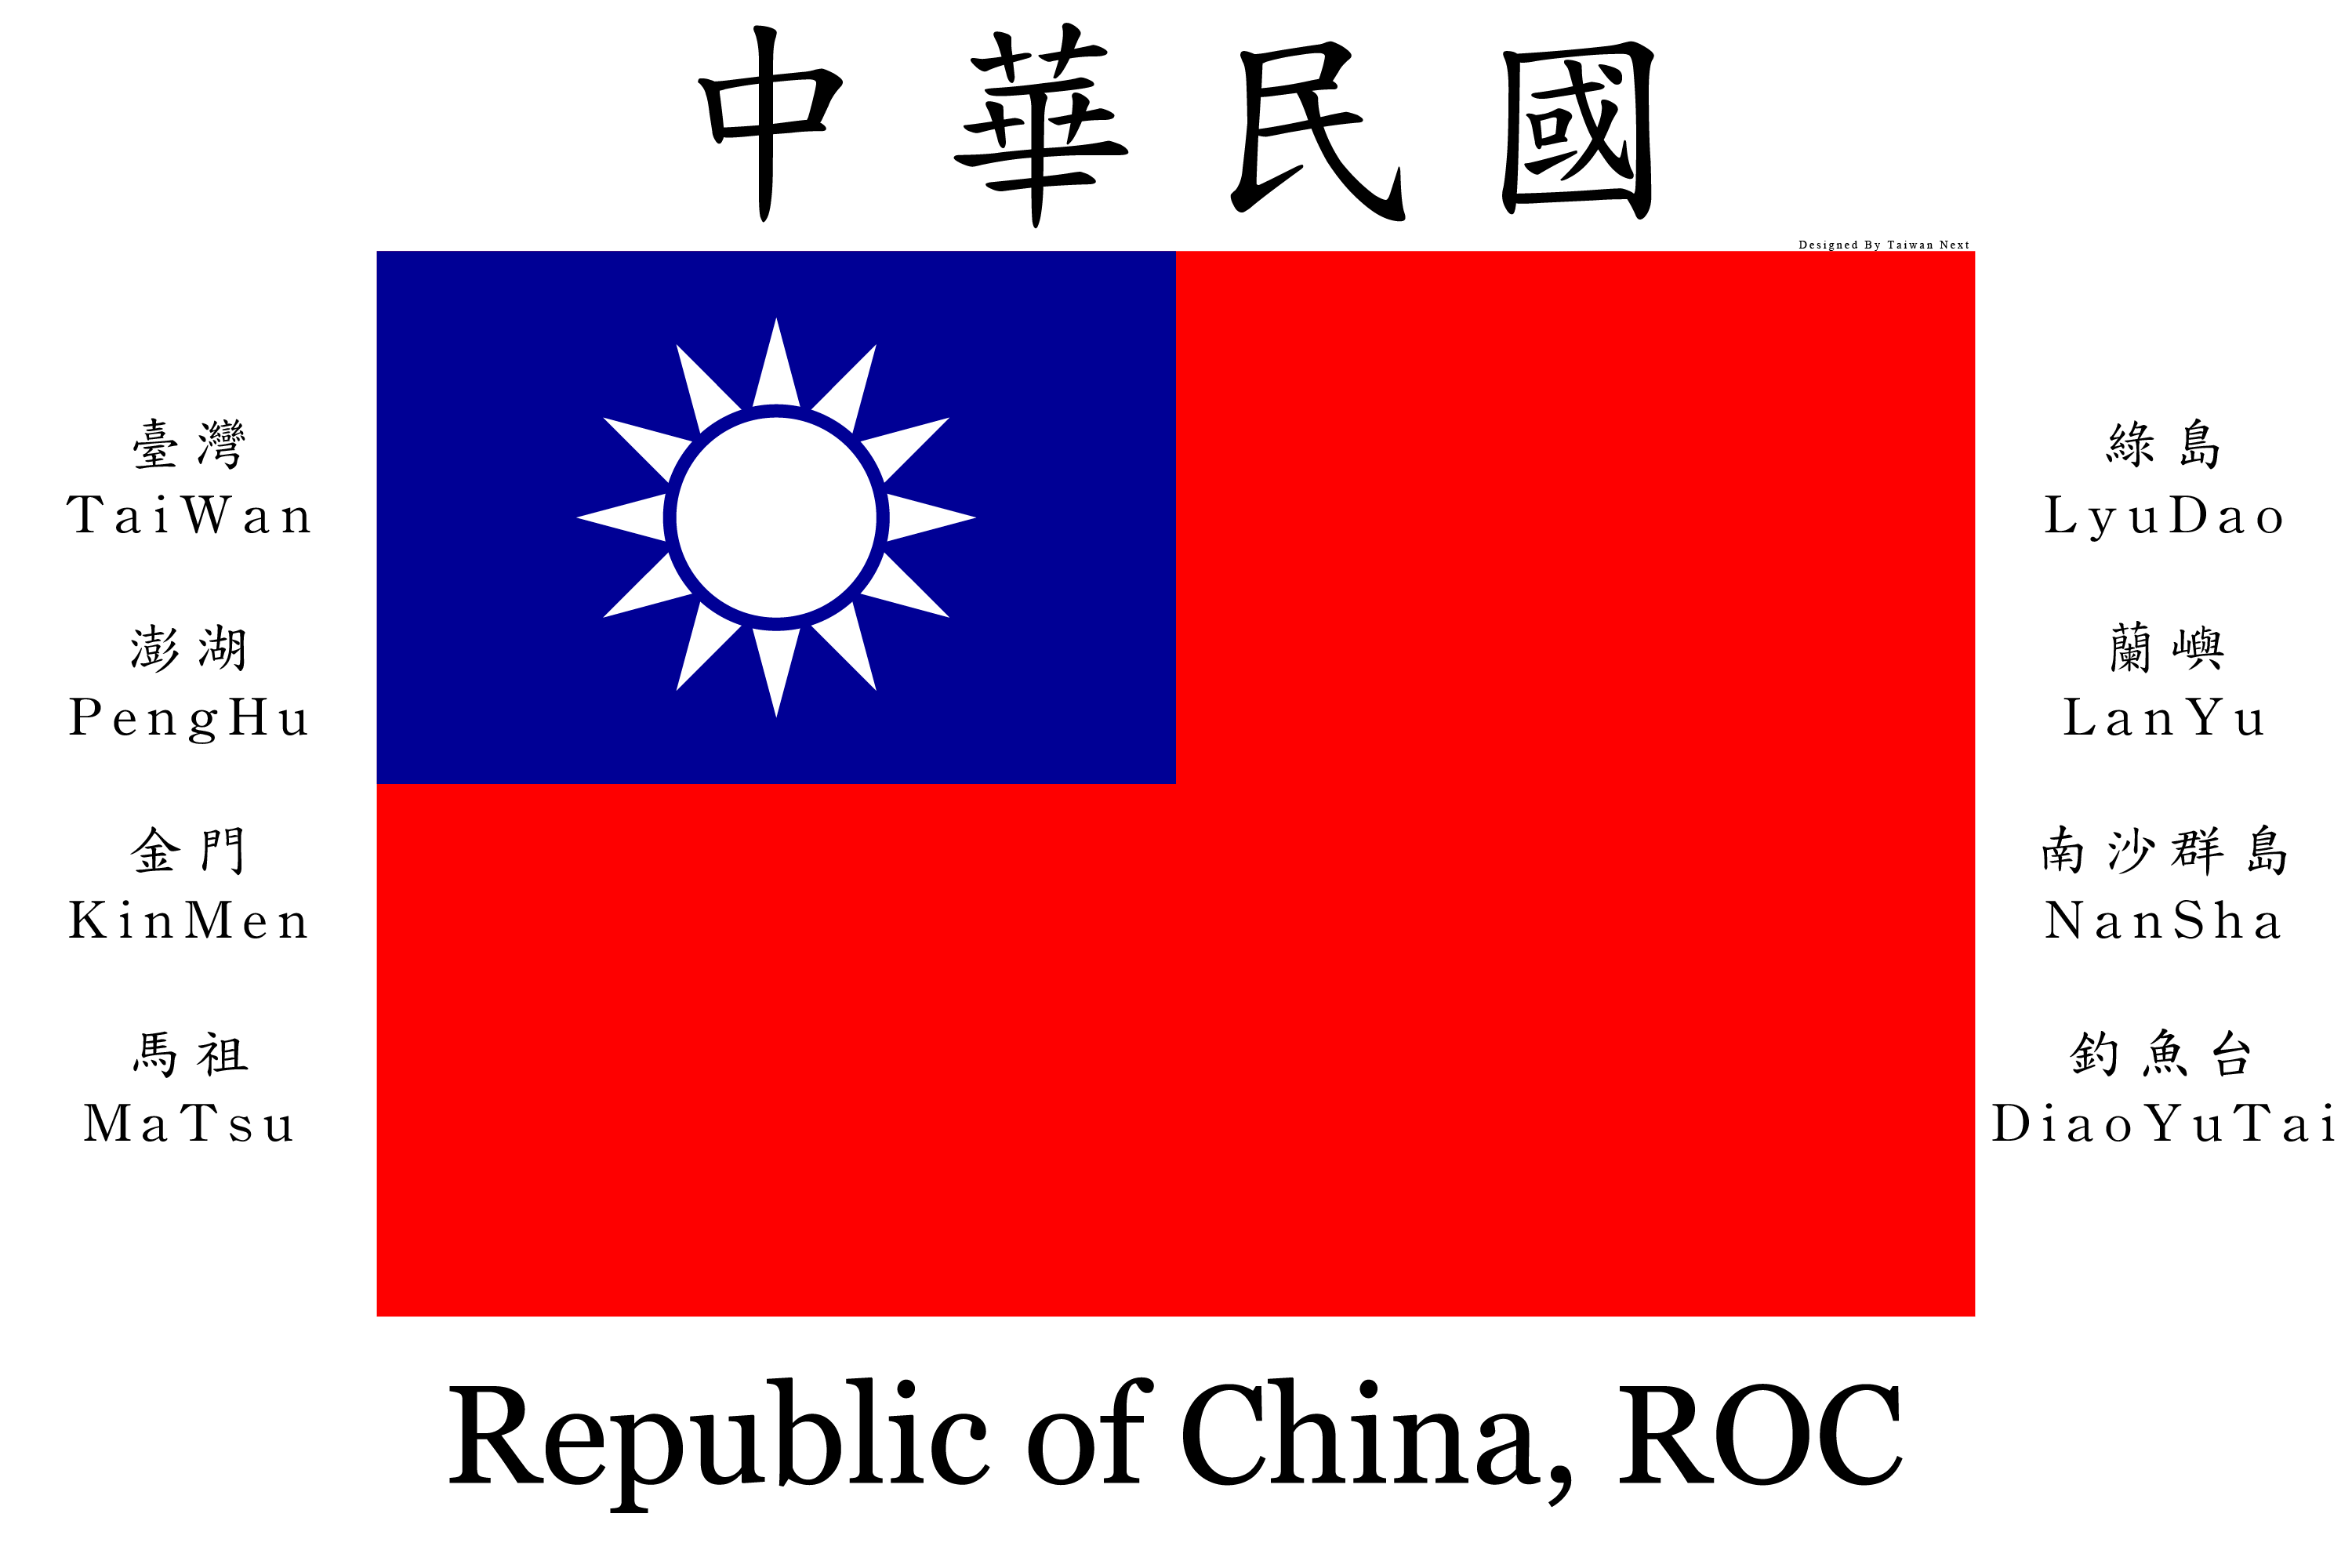 中華民國國旗（臺灣、澎湖、金門、馬祖）